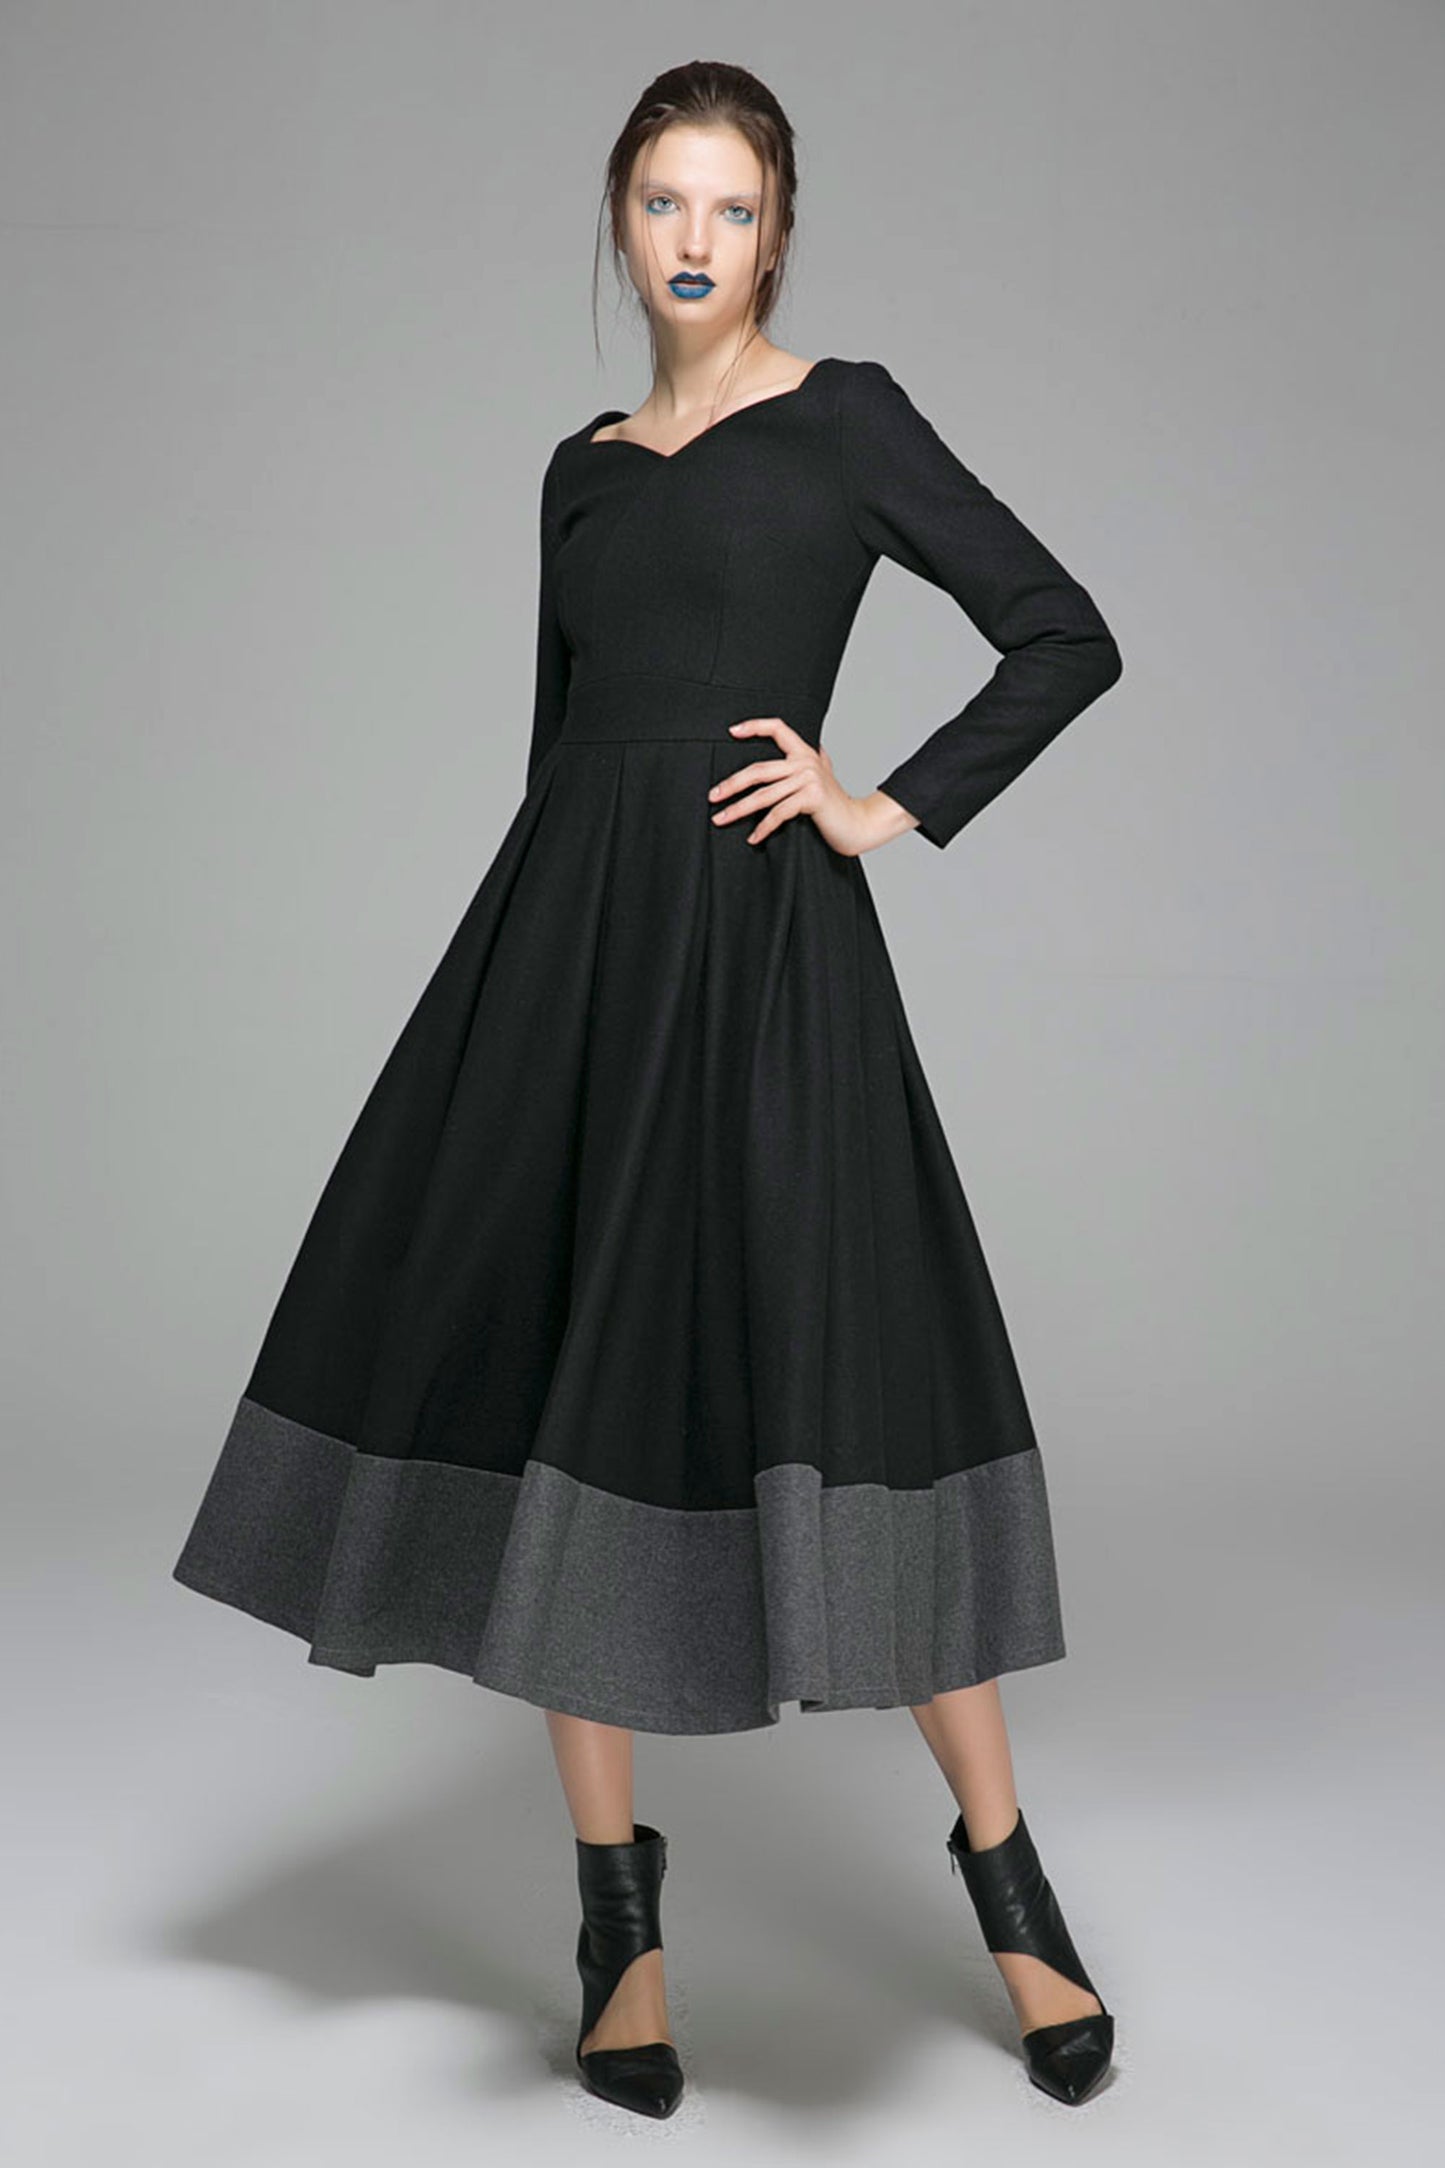 Black wool dress women maxi dress 1359#